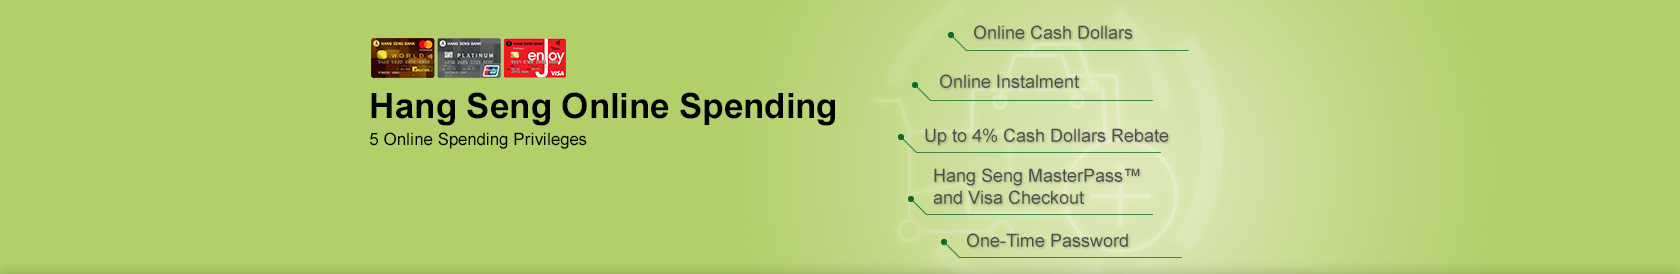 Hang Seng Online Spending Break new ground online shopping